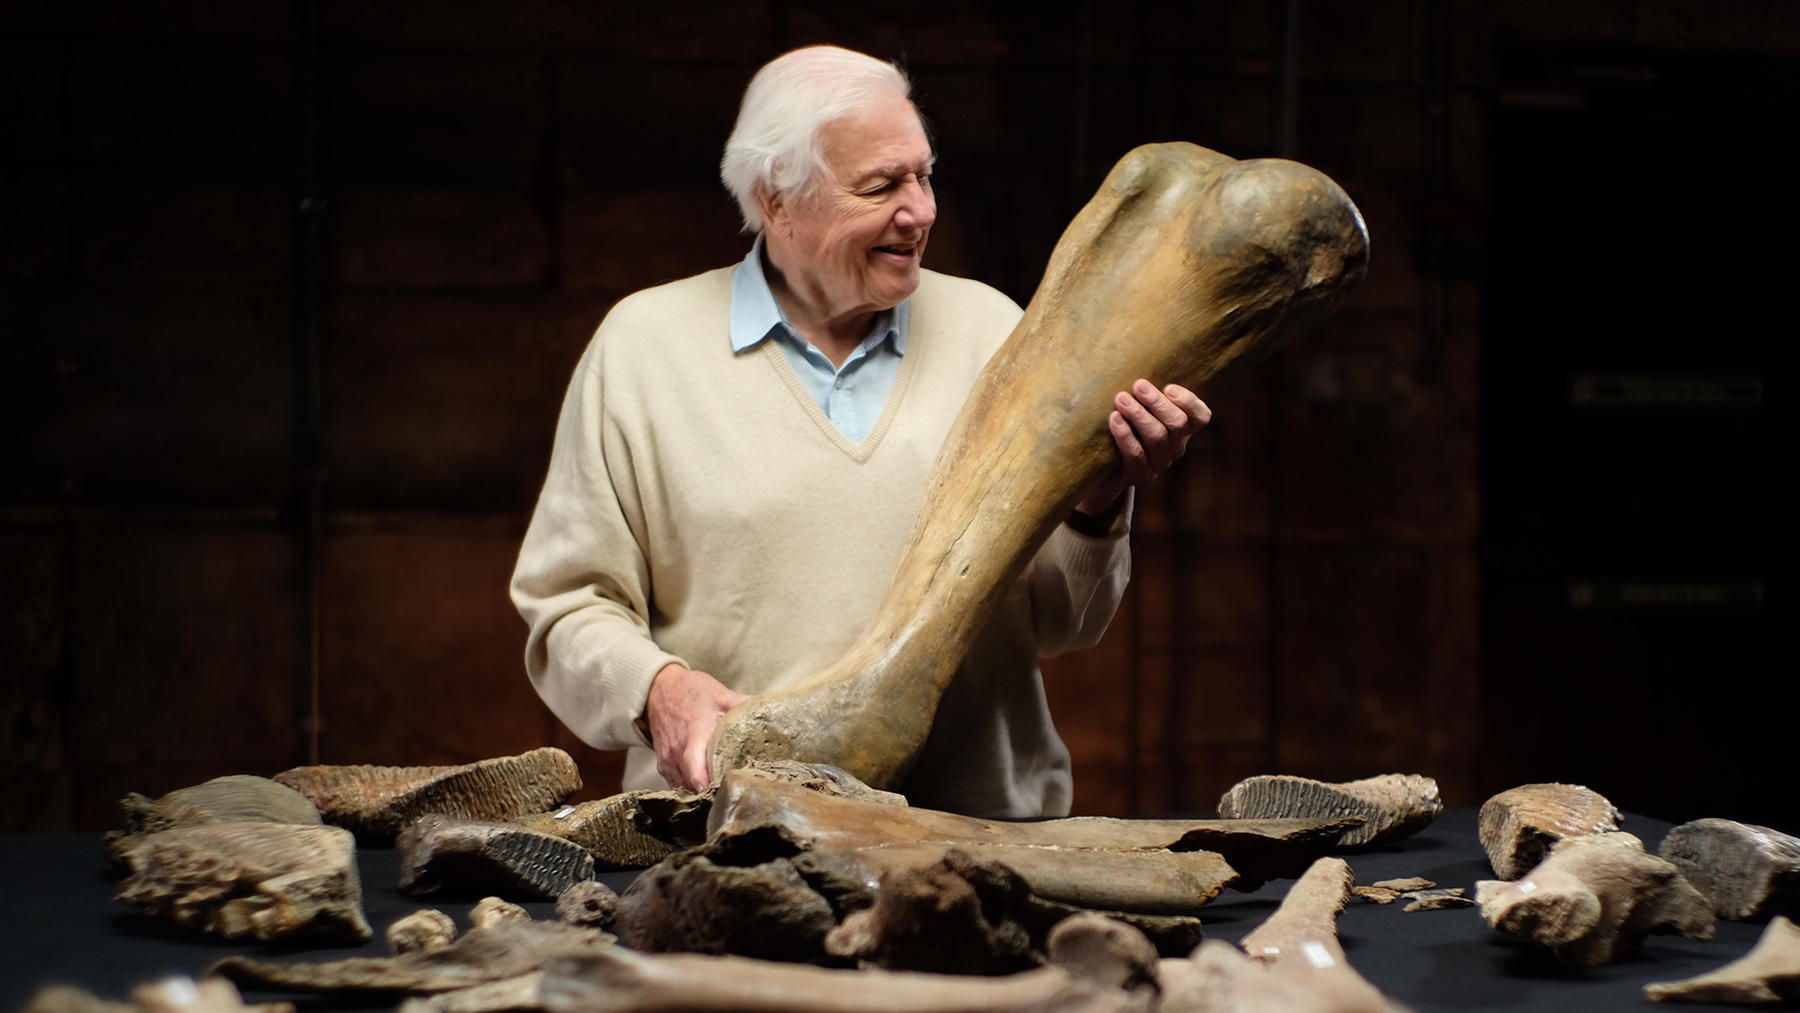 David Attenborough und der Mammut-Friedhof